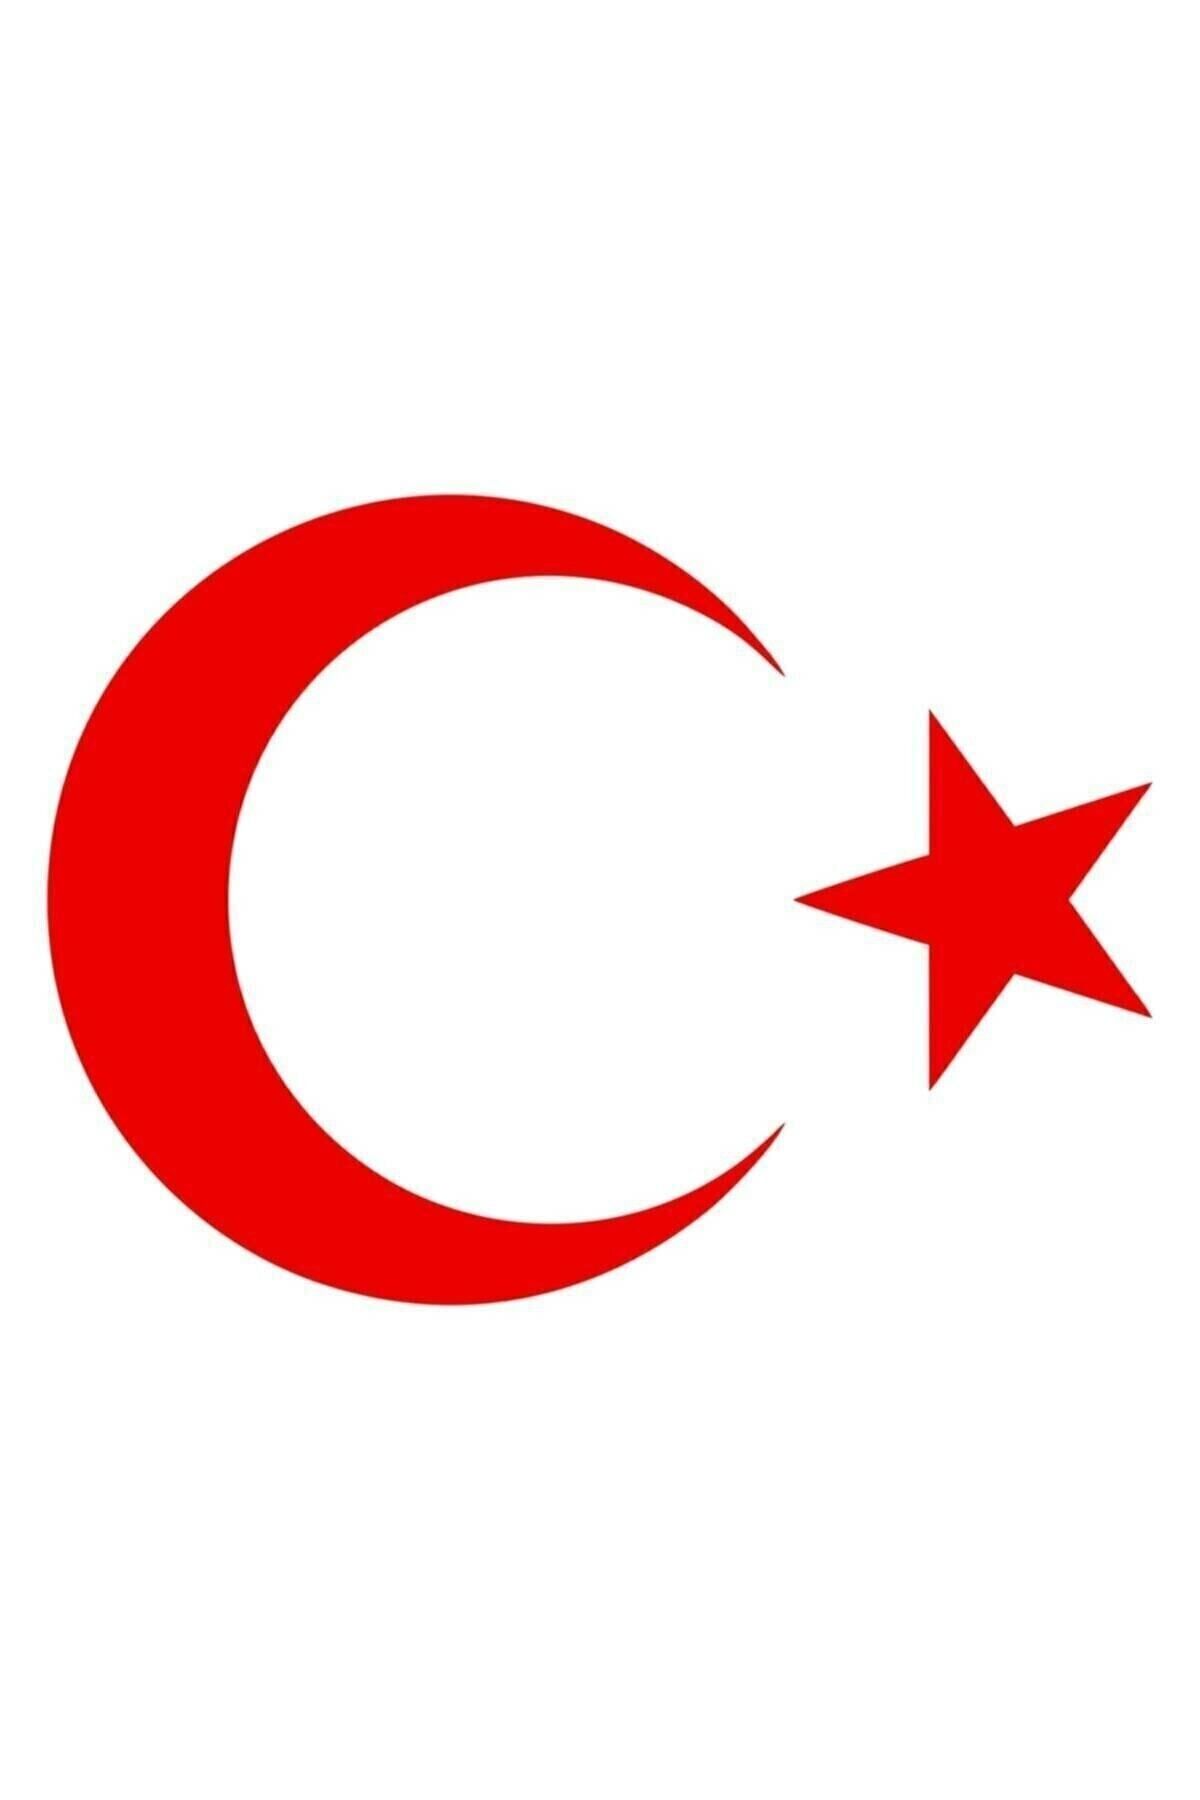 HMNL Ay Yıldız Sticker Türk Bayrağı Sticker 10 X 7,5 Cm Kırmızı